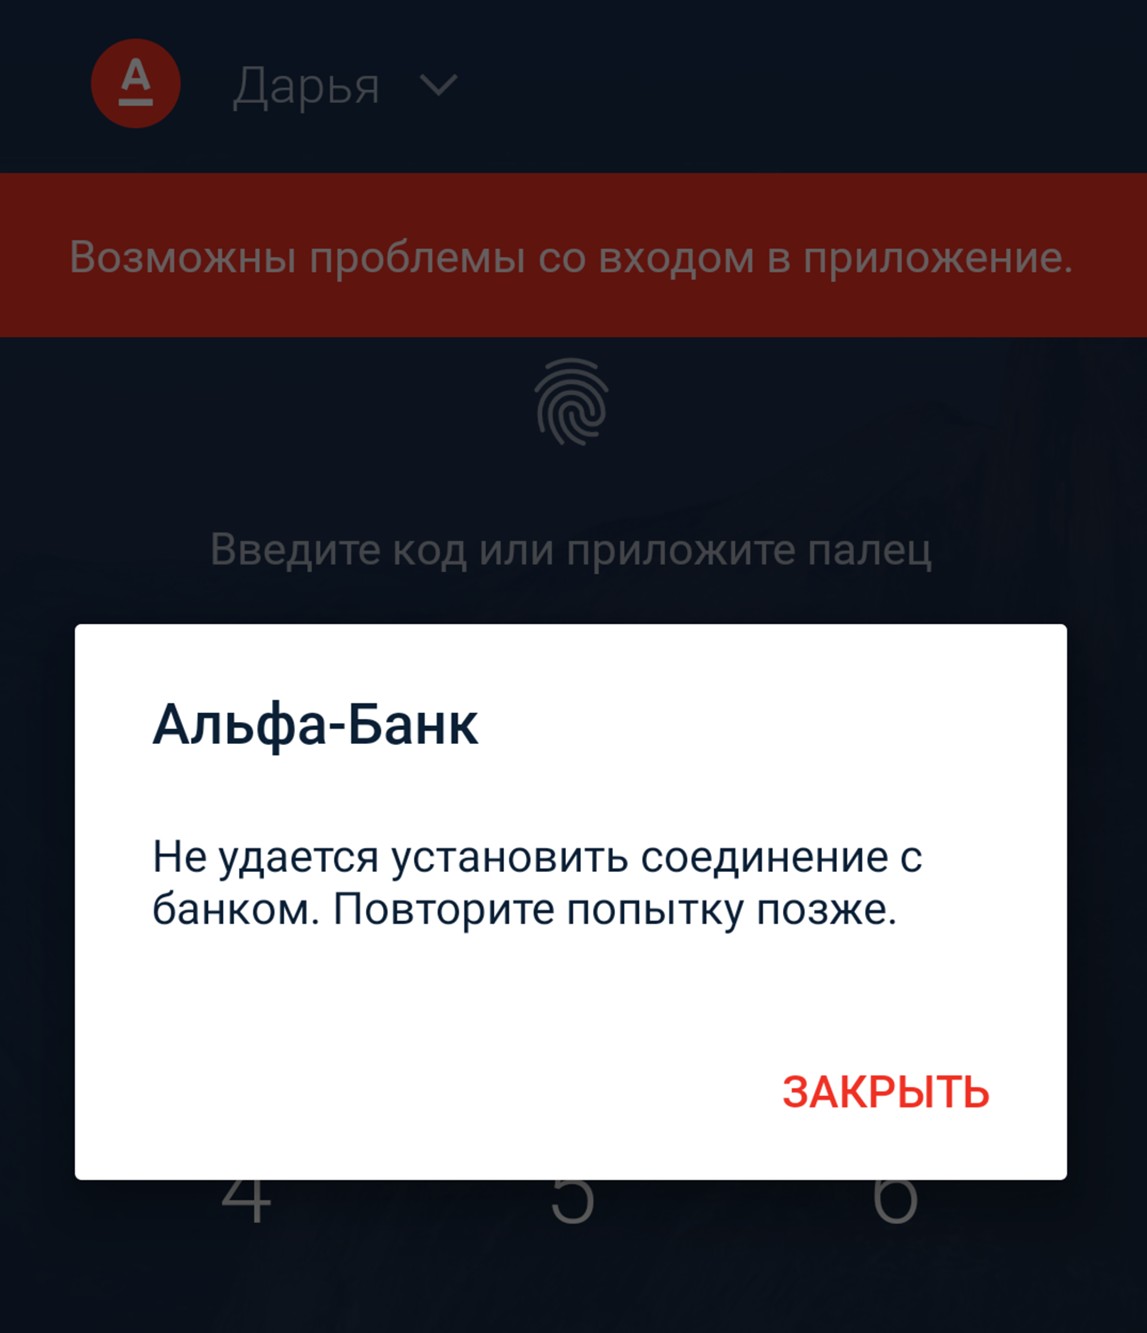 Клиенты пожаловались на сбои в работе мобильного банка Альфа-Банка  20.05.2019 | Банки.ру